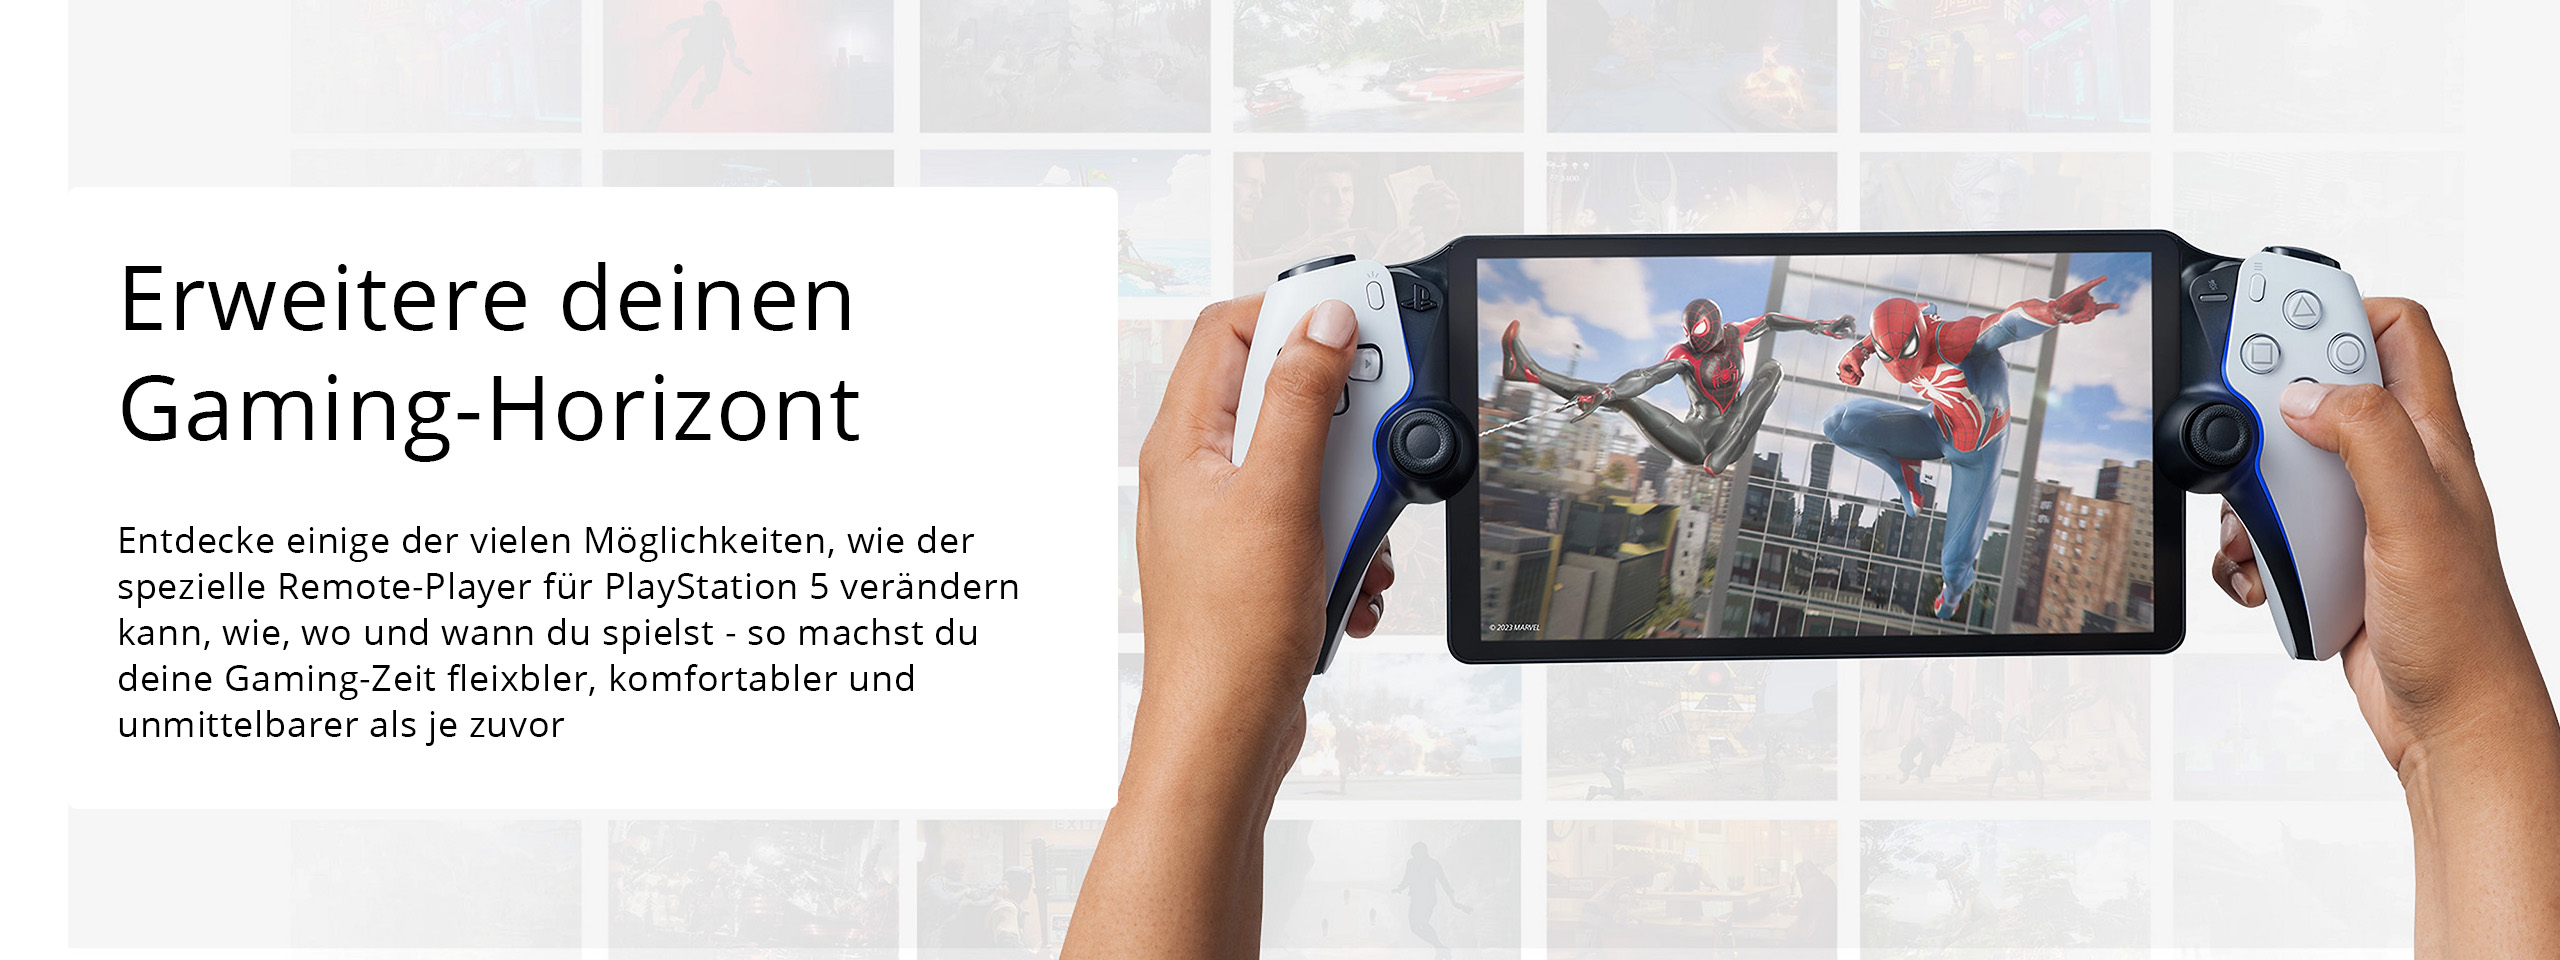 PlayStation 5 DualSense Controller kaufen - Bei GameStop sichern